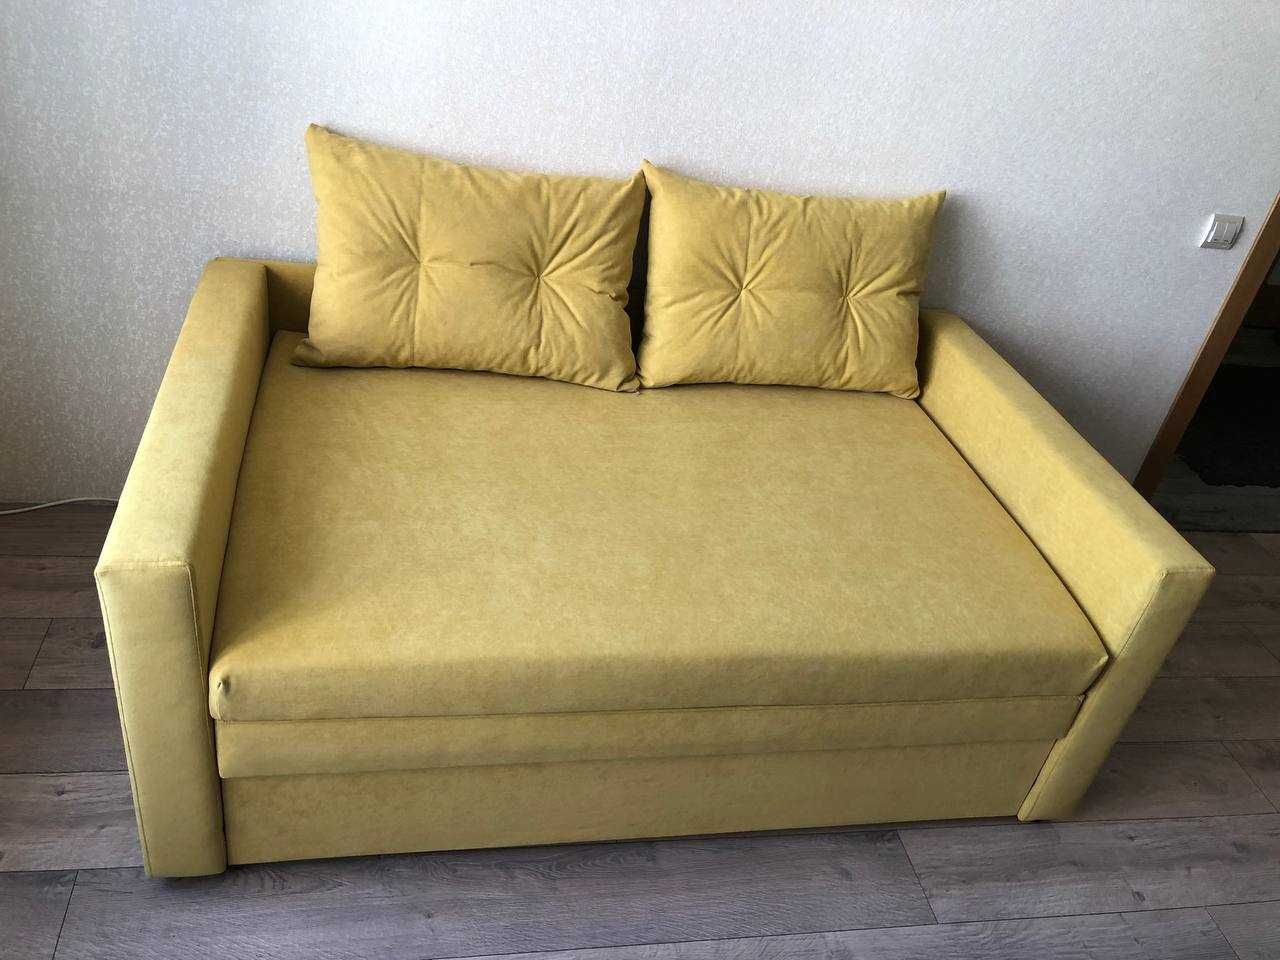 Выкатной диван "Блюз" 190*140 см ширина спального. Доставка Киев и обл